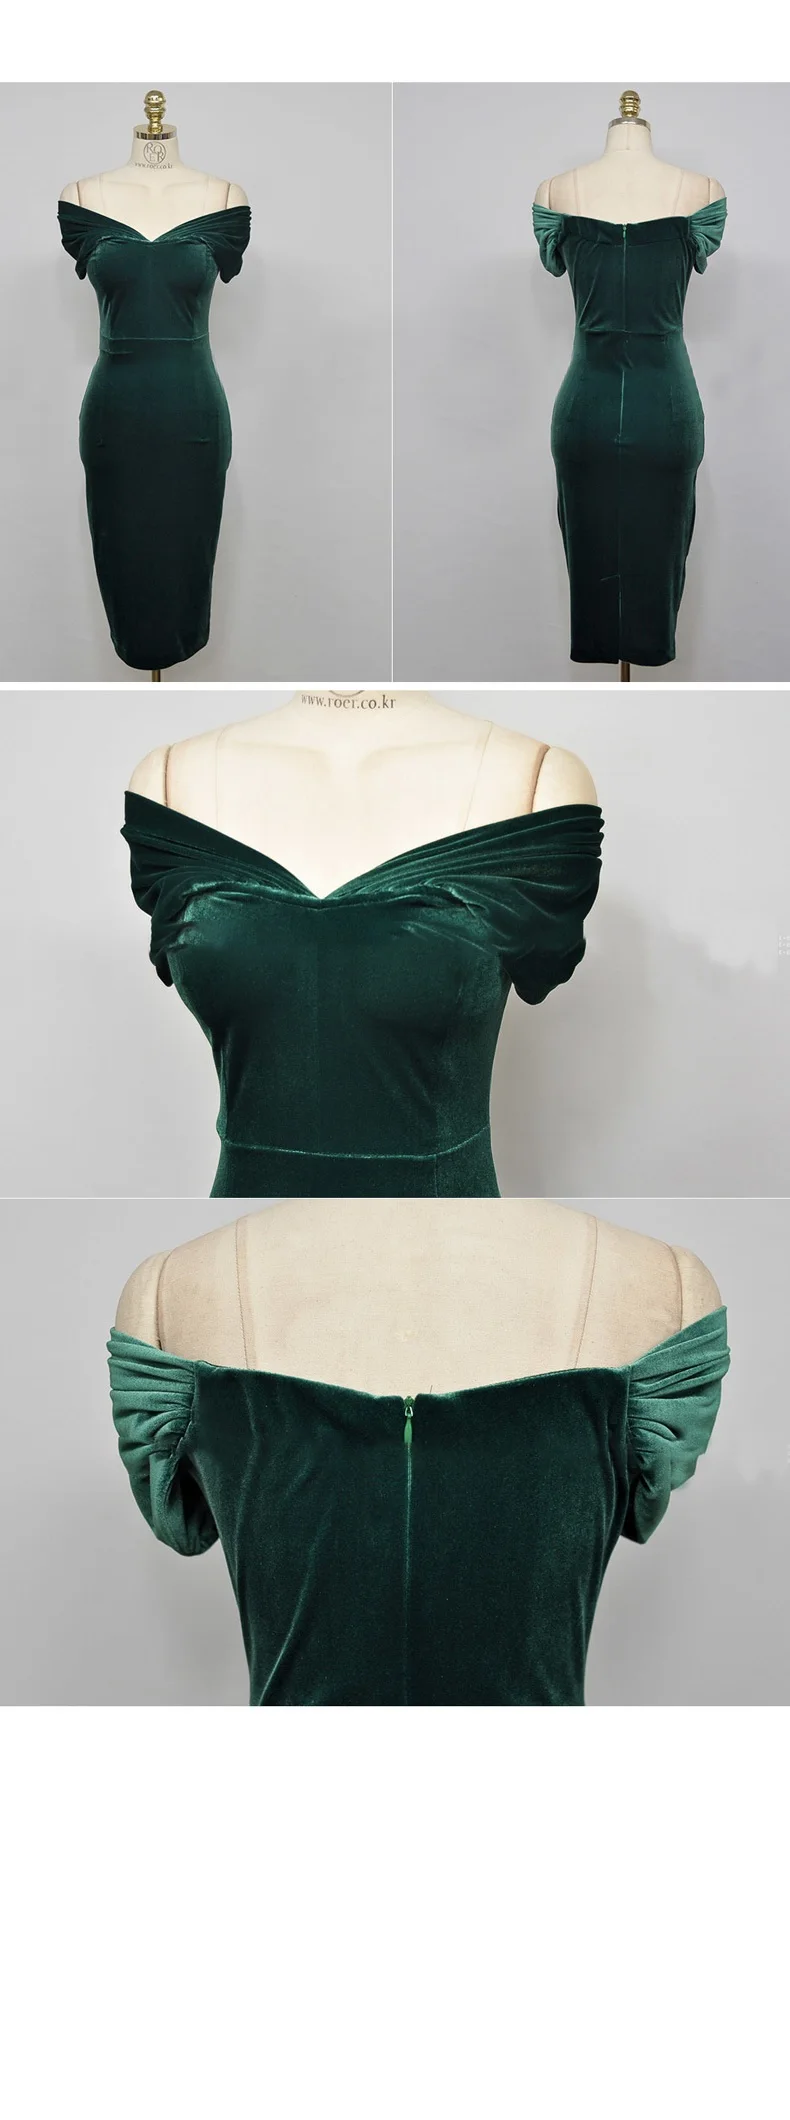 Женское платье-карандаш большого размера осеннее зеленое с коротким рукавом с вырезом лодочкой и открытыми плечами элегантное винтажное платье вельветовое платье для вечеринки